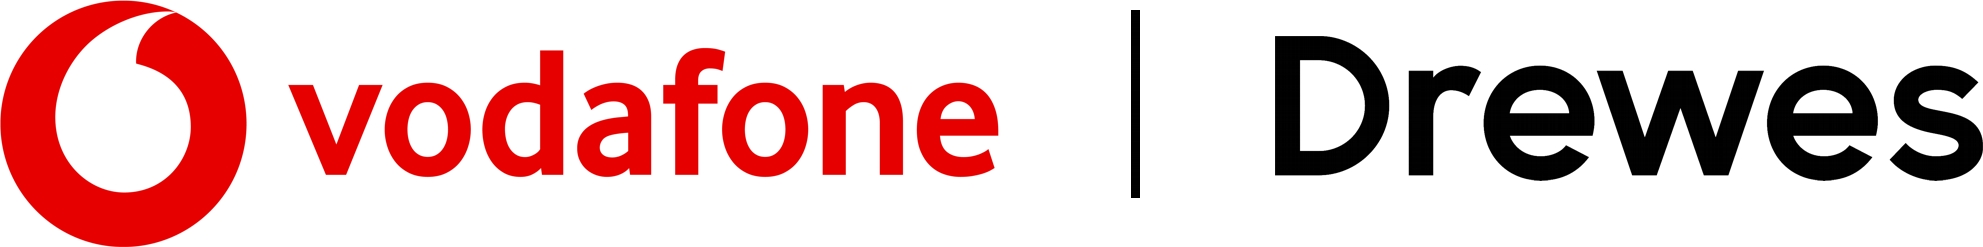 Ihr Vodafone-Partner im östlichen Mecklenburg-Vorpommern